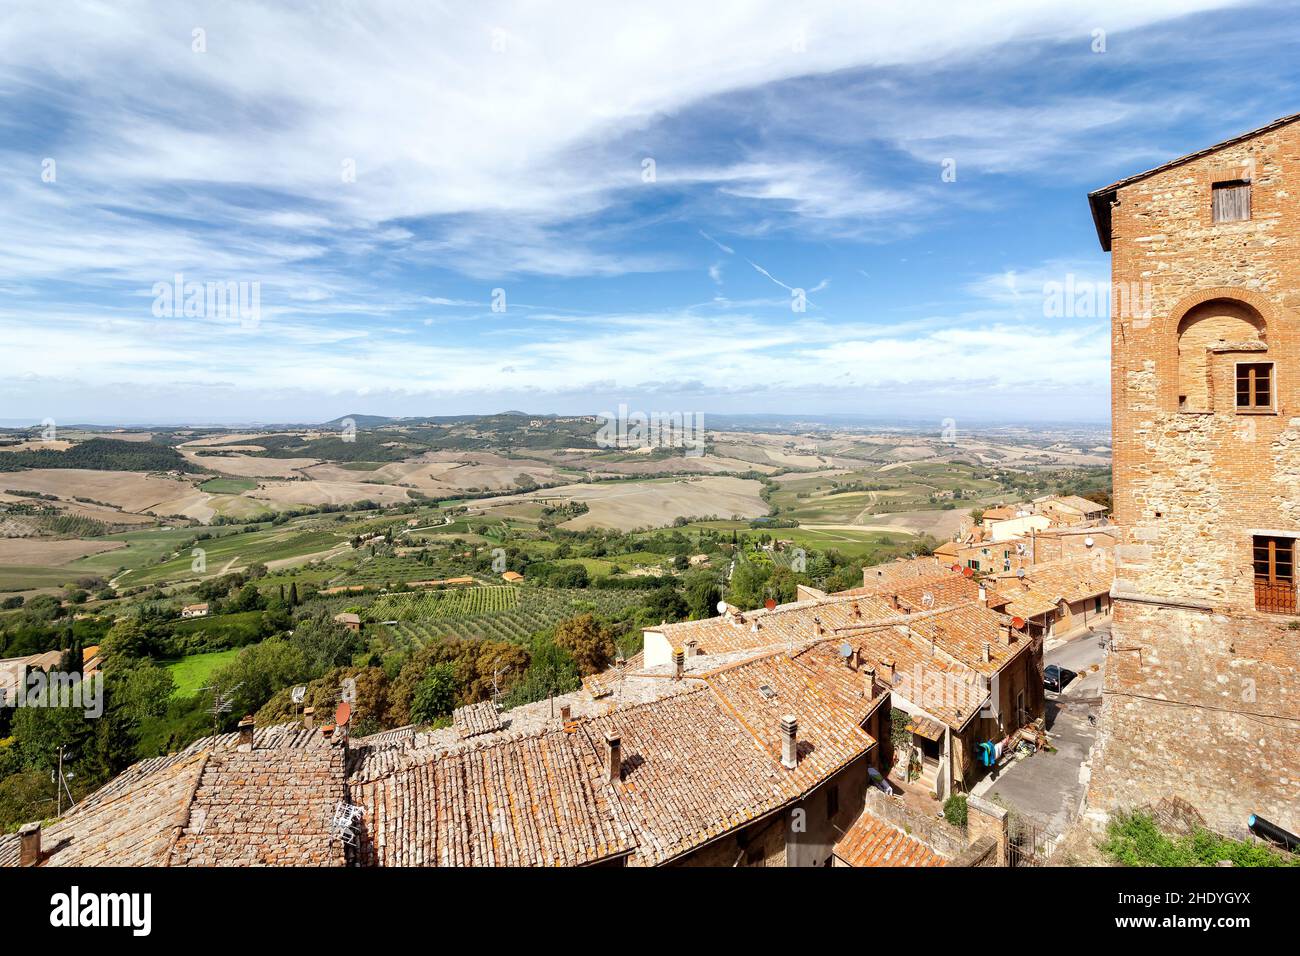 village, tuscany, villages, tuscanies Stock Photo